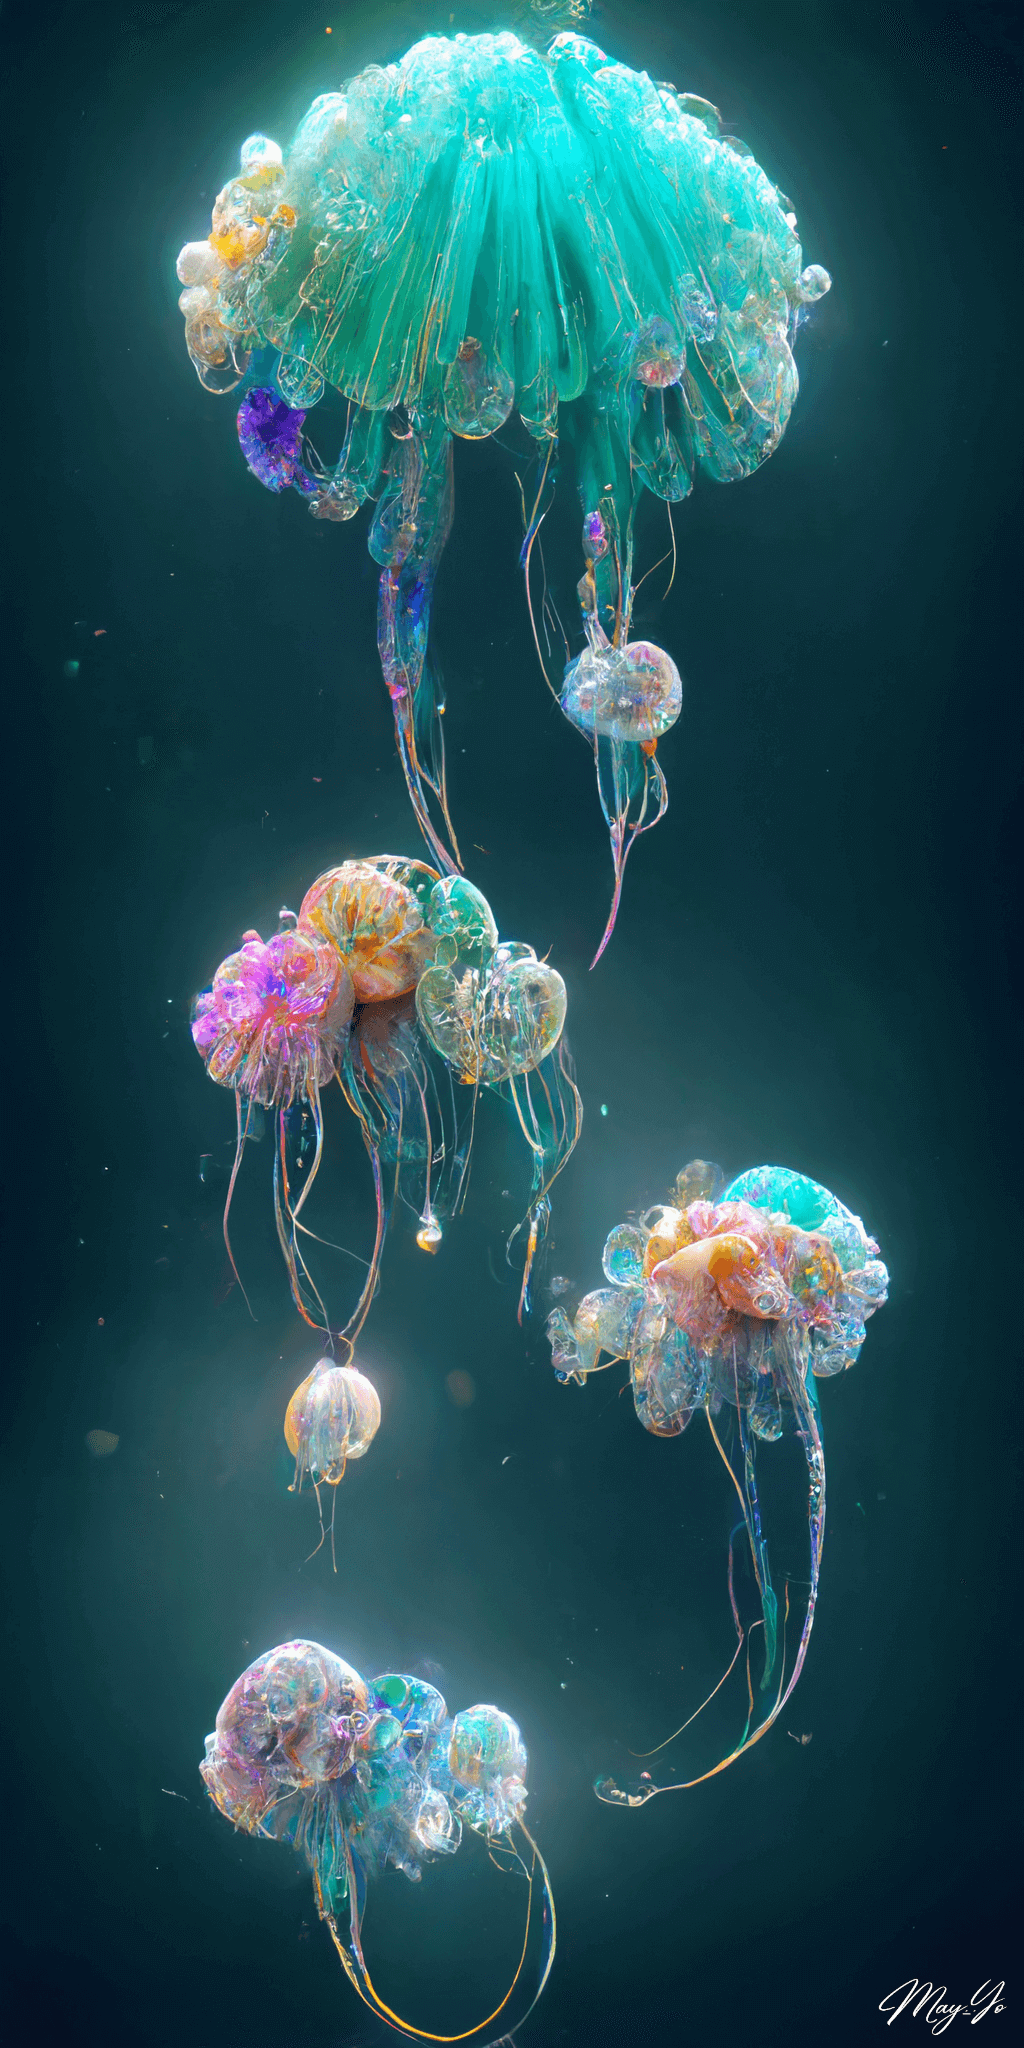 美しく幻想的なクラゲの壁紙イラスト カラフルな光るクラゲの待受 AIイラスト待受 縦長画像 jellyfish illustration fiction art